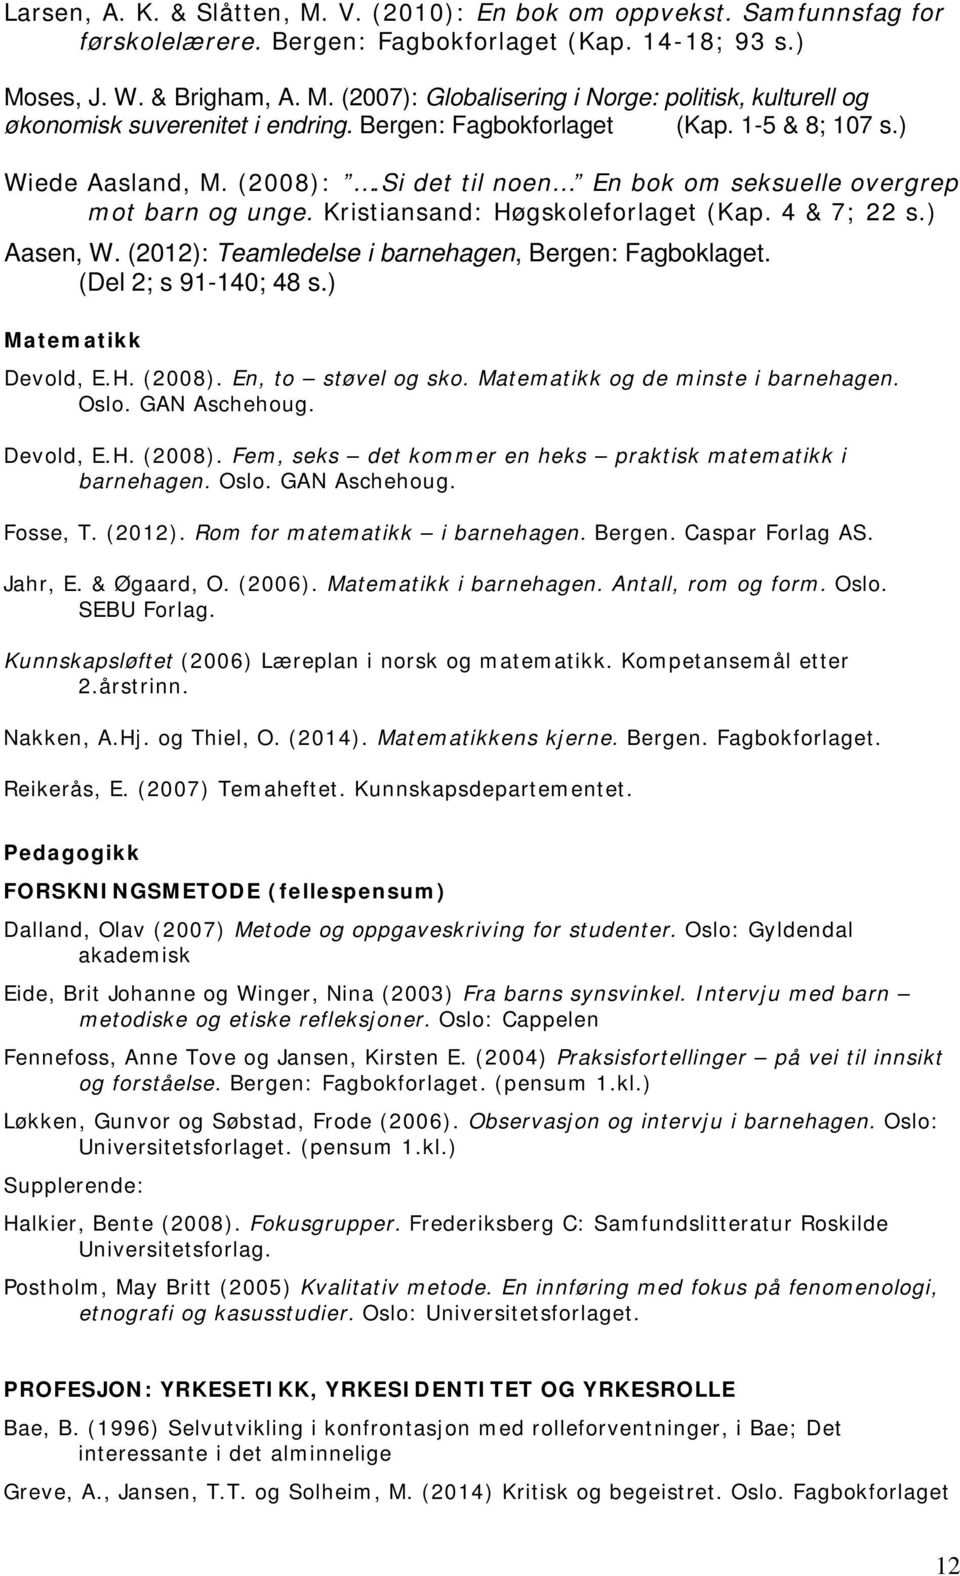 (2012): Teamledelse i barnehagen, Bergen: Fagboklaget. (Del 2; s 91-140; 48 s.) Matematikk Devold, E.H. (2008). En, to støvel og sko. Matematikk og de minste i barnehagen. Oslo. GAN Aschehoug.